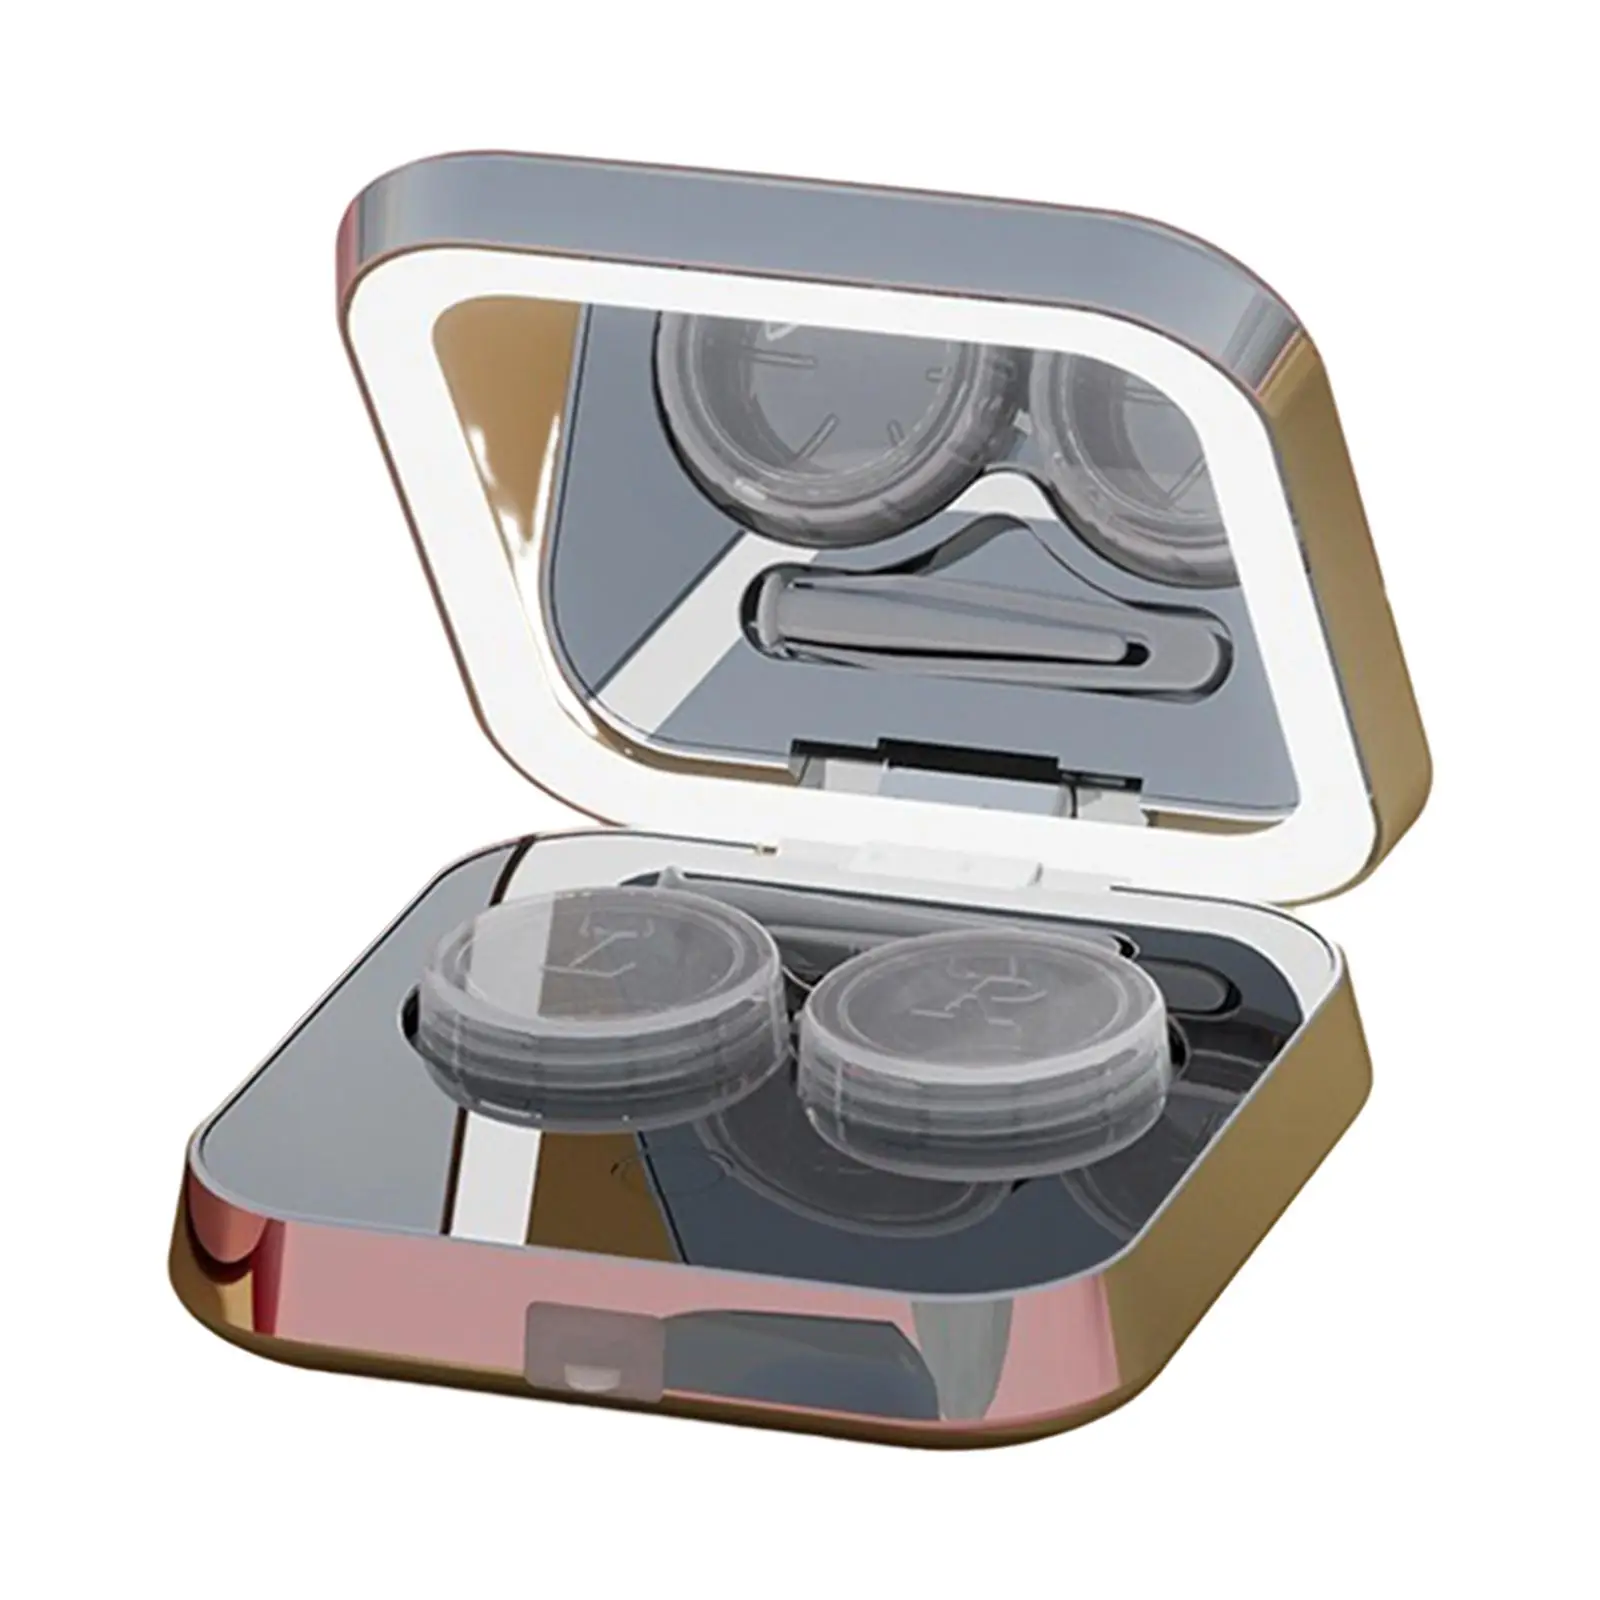  контактни лещи ултразвукови с огледални пинсети мини държач контейнер за съхранение почистване кутия око контакт лещи случай възрастни мъже жени 1